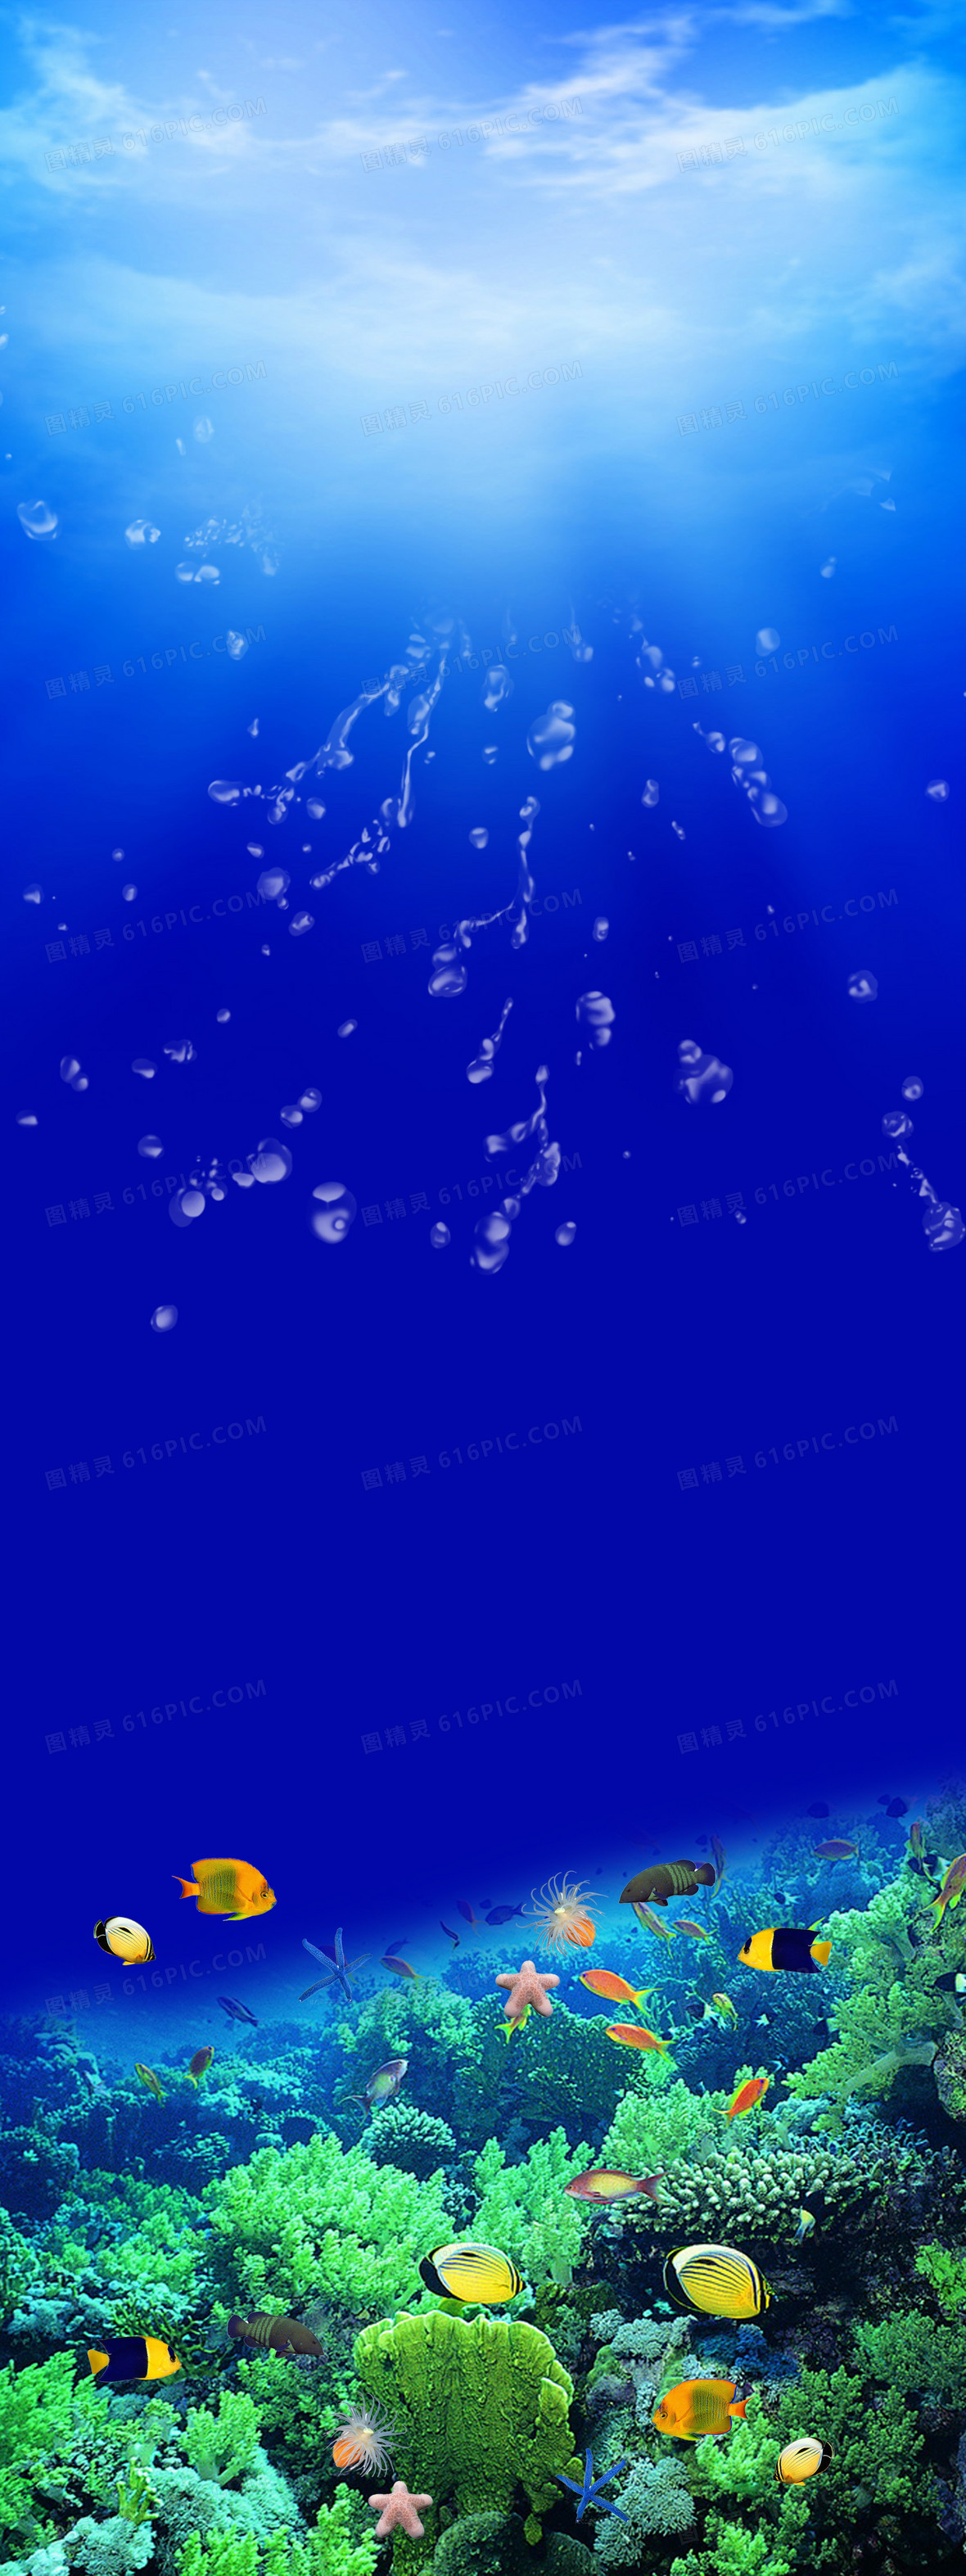 关键词:              海底世界鱼珊瑚礁石海水阳光蓝色摄影风景